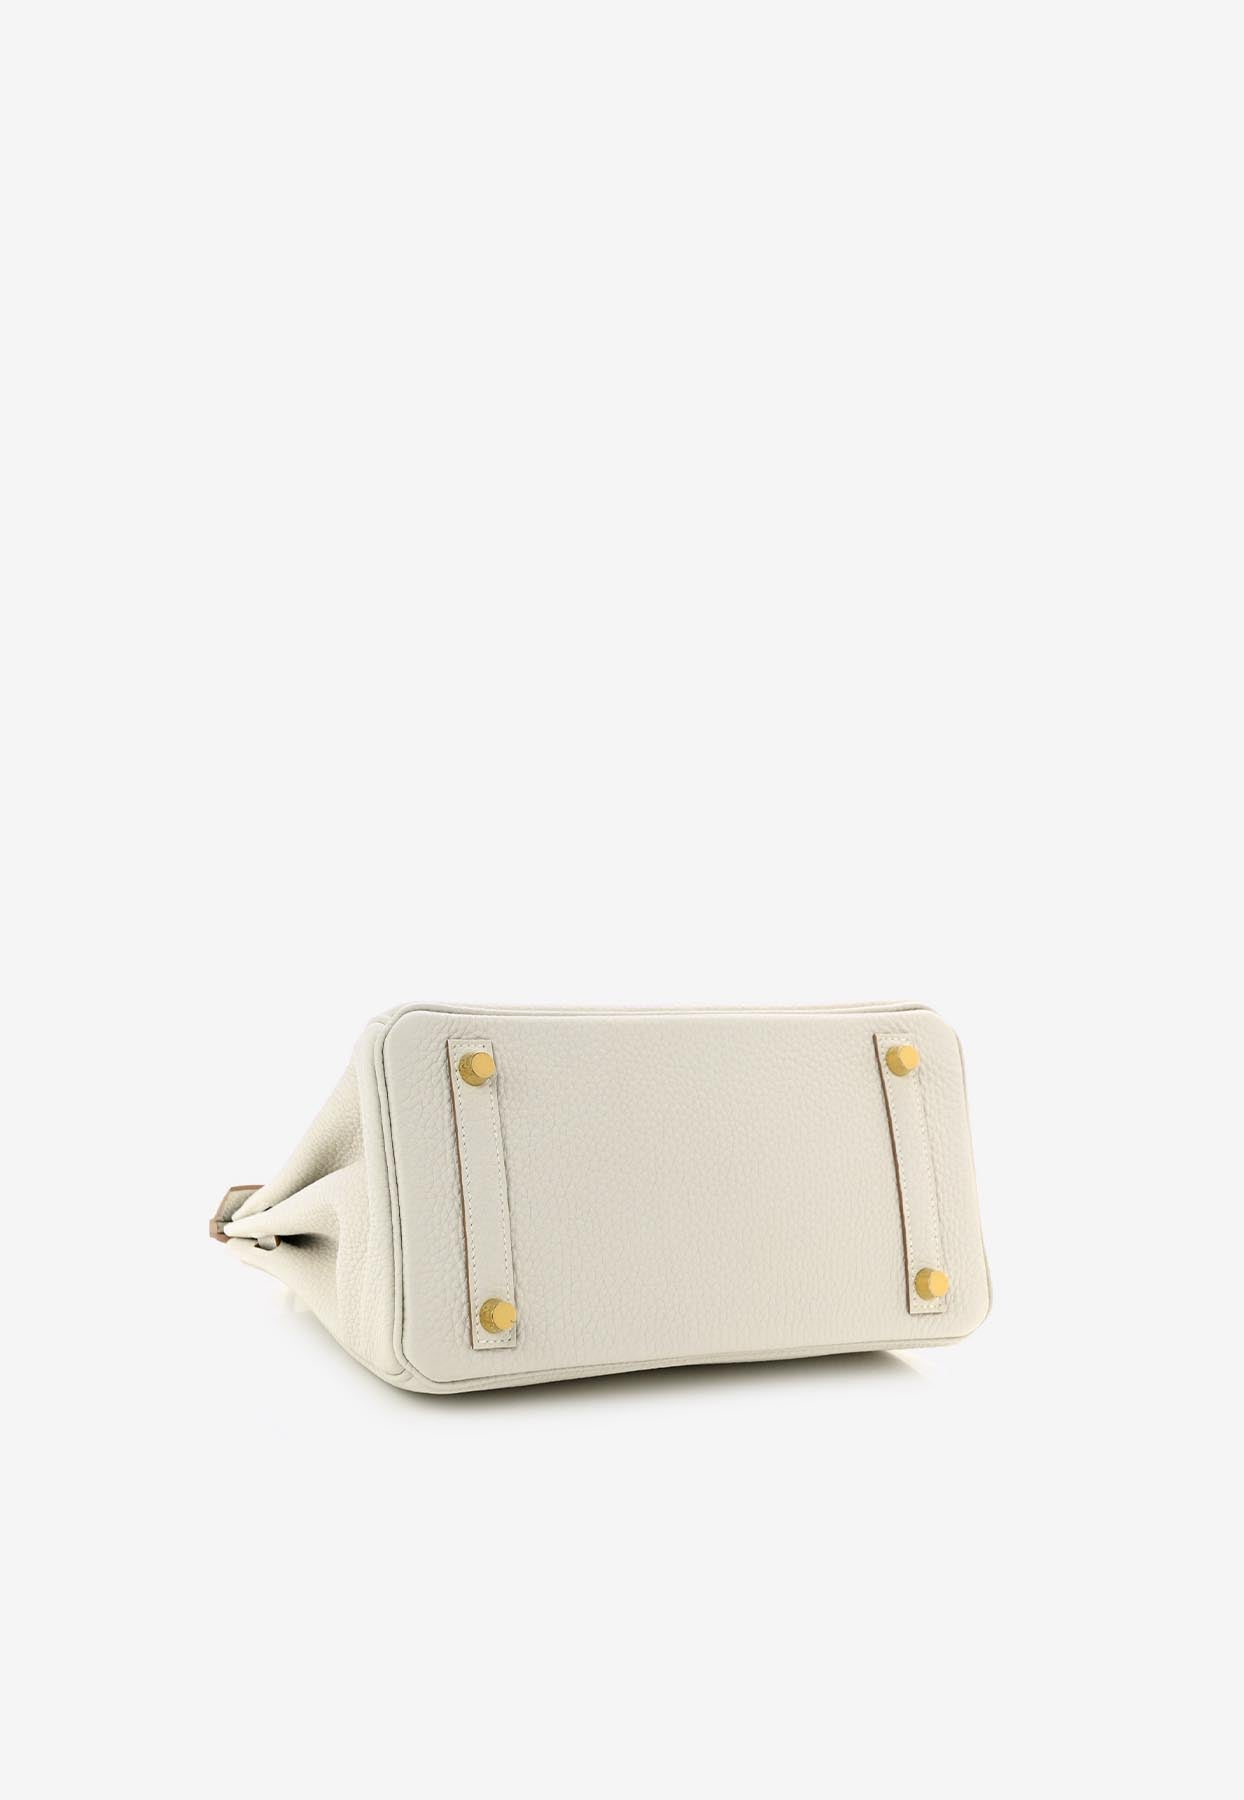 🗝️ Hermès 25cm Birkin Gris Tourterelle Togo Leather Gold Hardware  #priveporter #hermes #birkin #birkin25 #gristourterelle